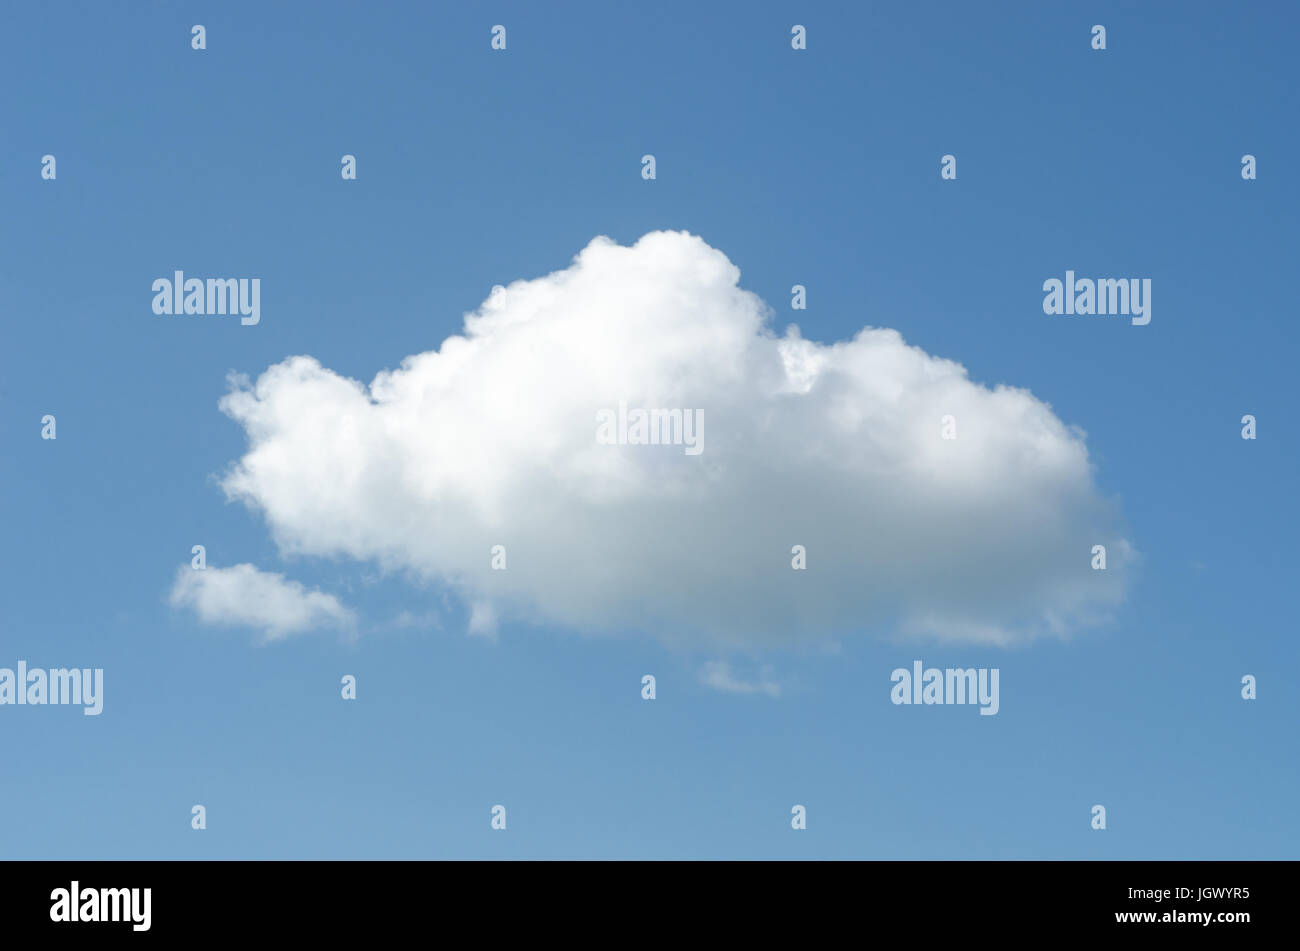 Eine große weiße flauschige Wolke schweben in einem blauen Himmel. Stockfoto